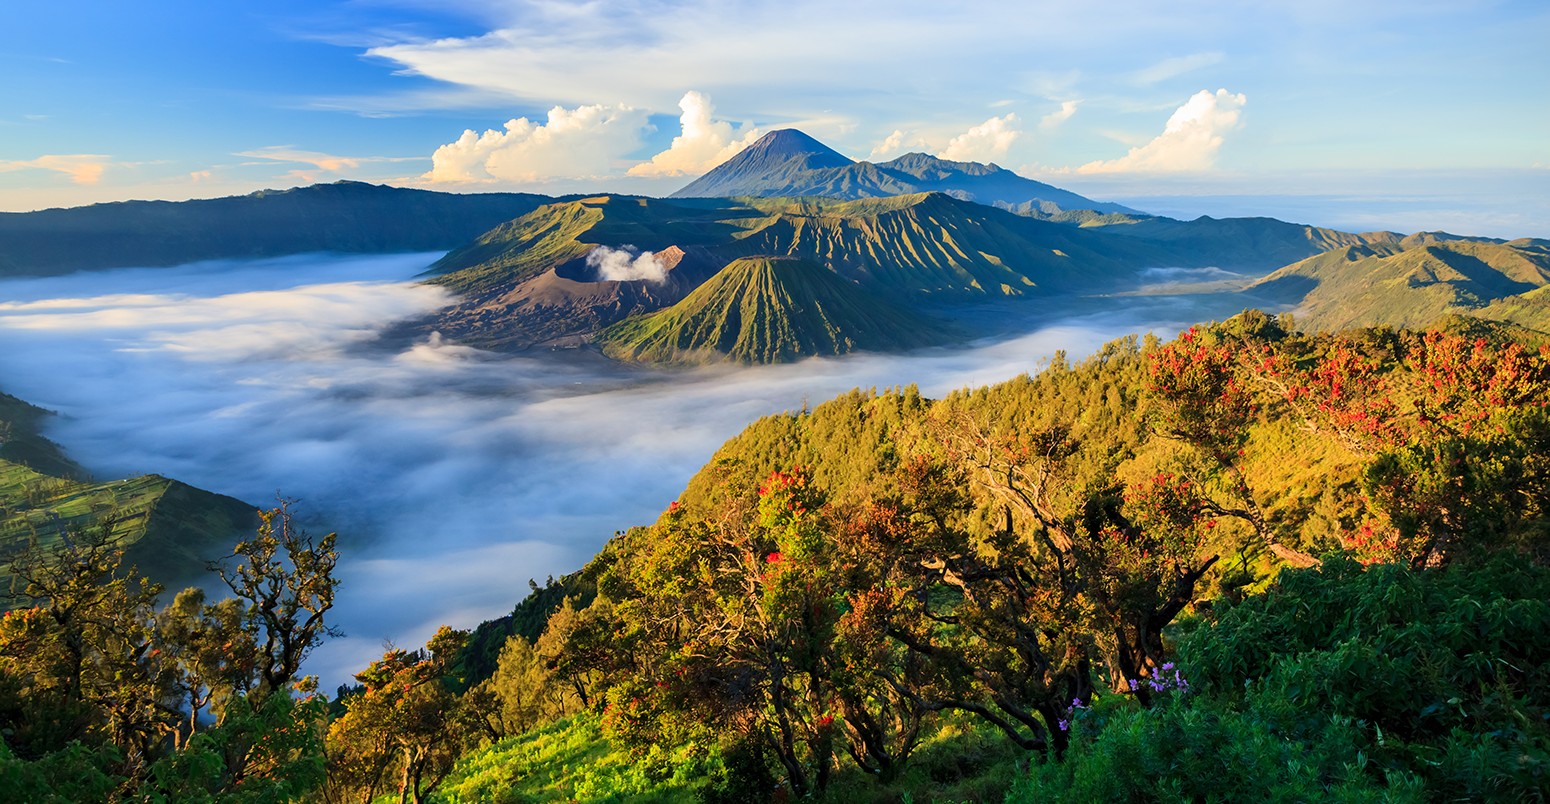 婆罗摩火山在日出,腾格里照片中国家公园,印度尼西亚东爪哇